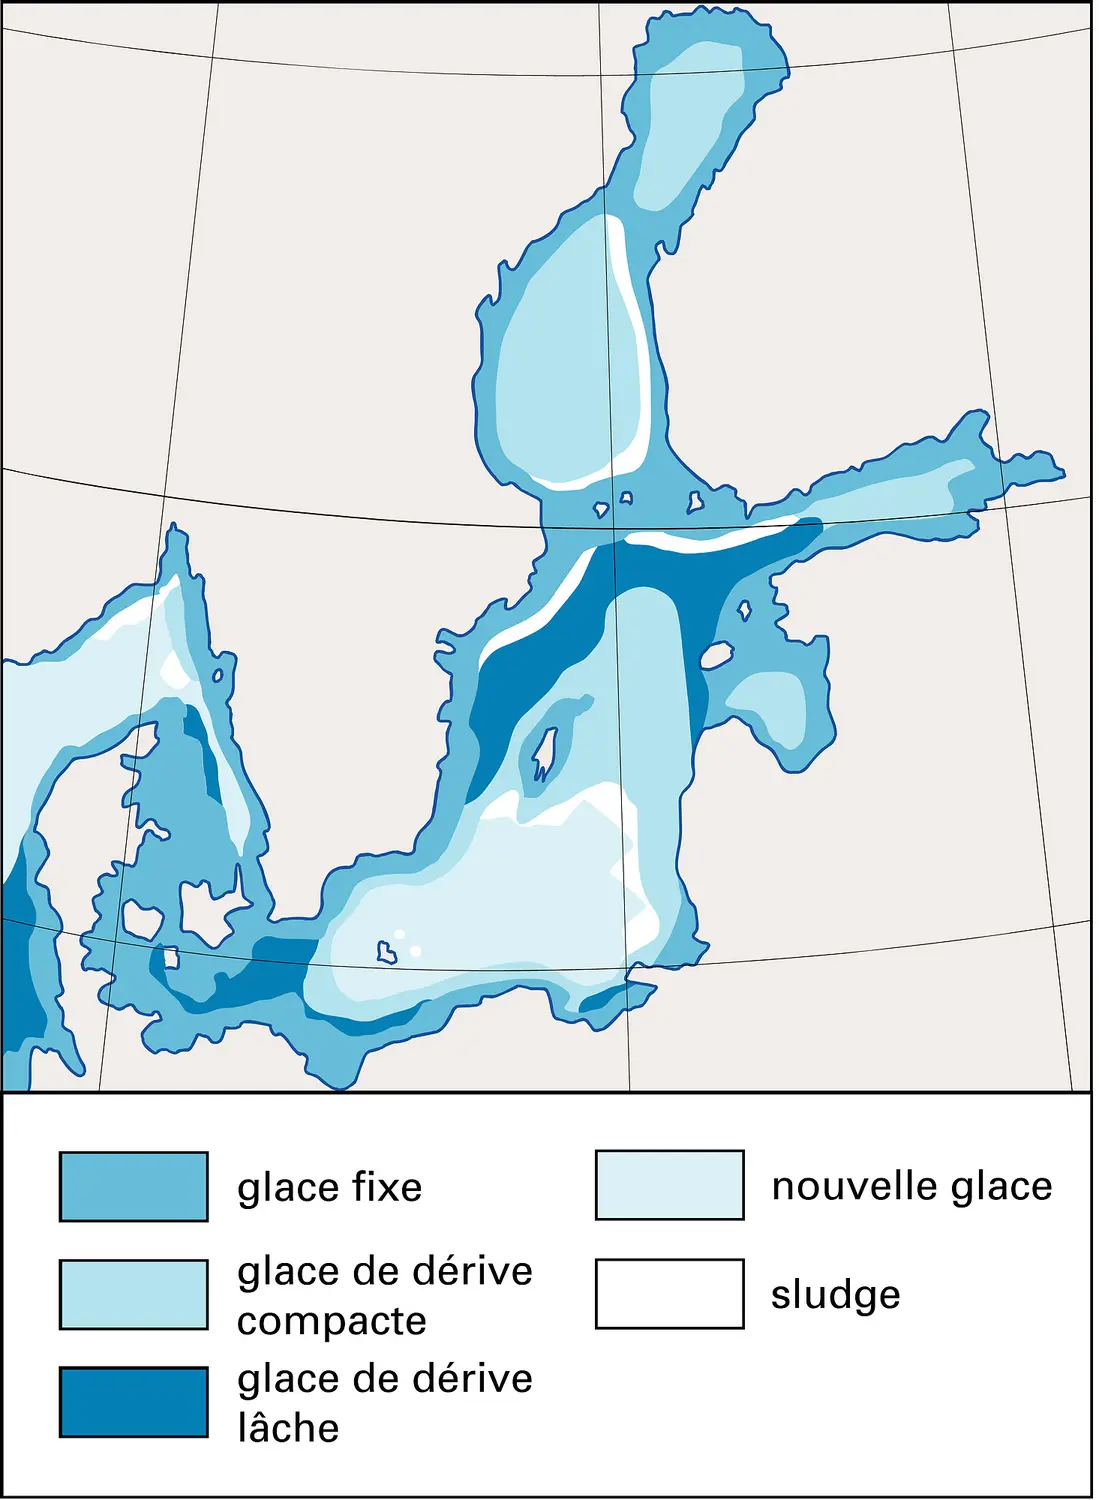 Baltique : les glaces au cours d'un hiver dur